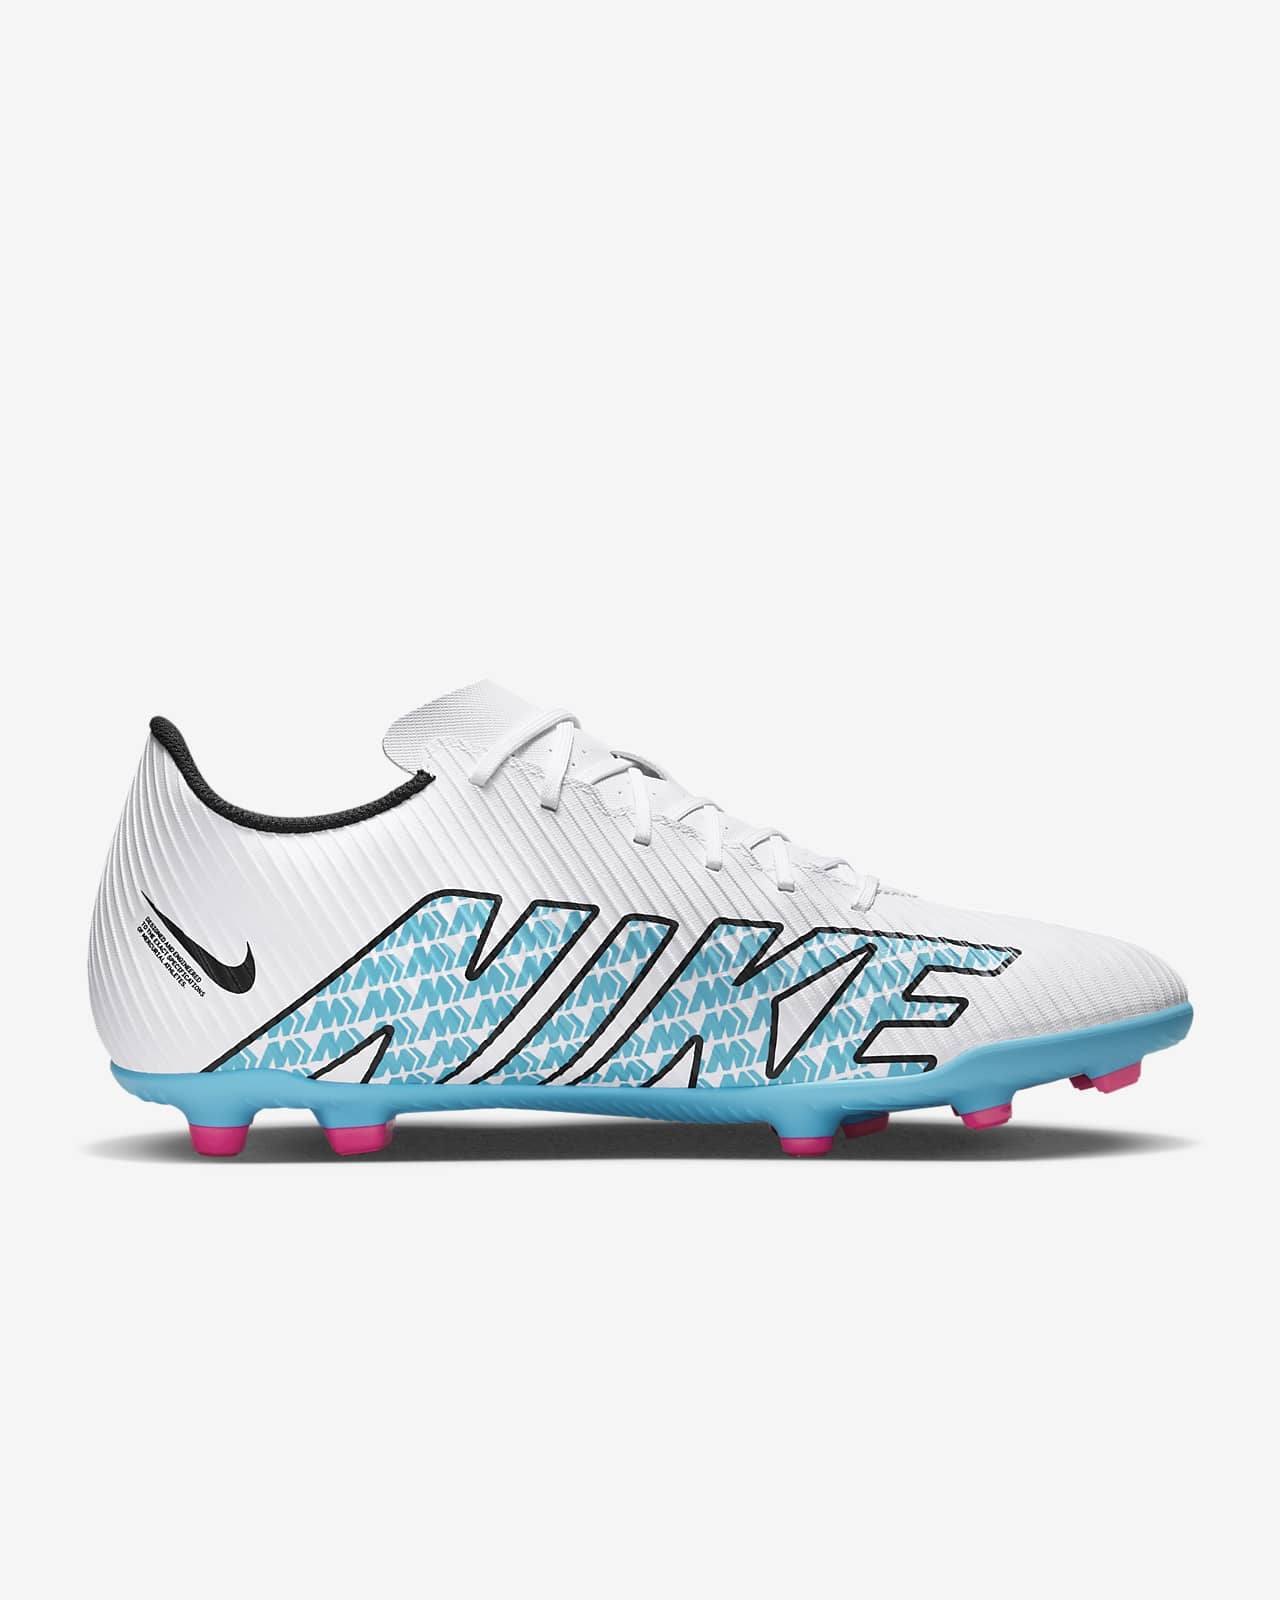 Nike Vapor 15 Club MG Soccer Cleats.